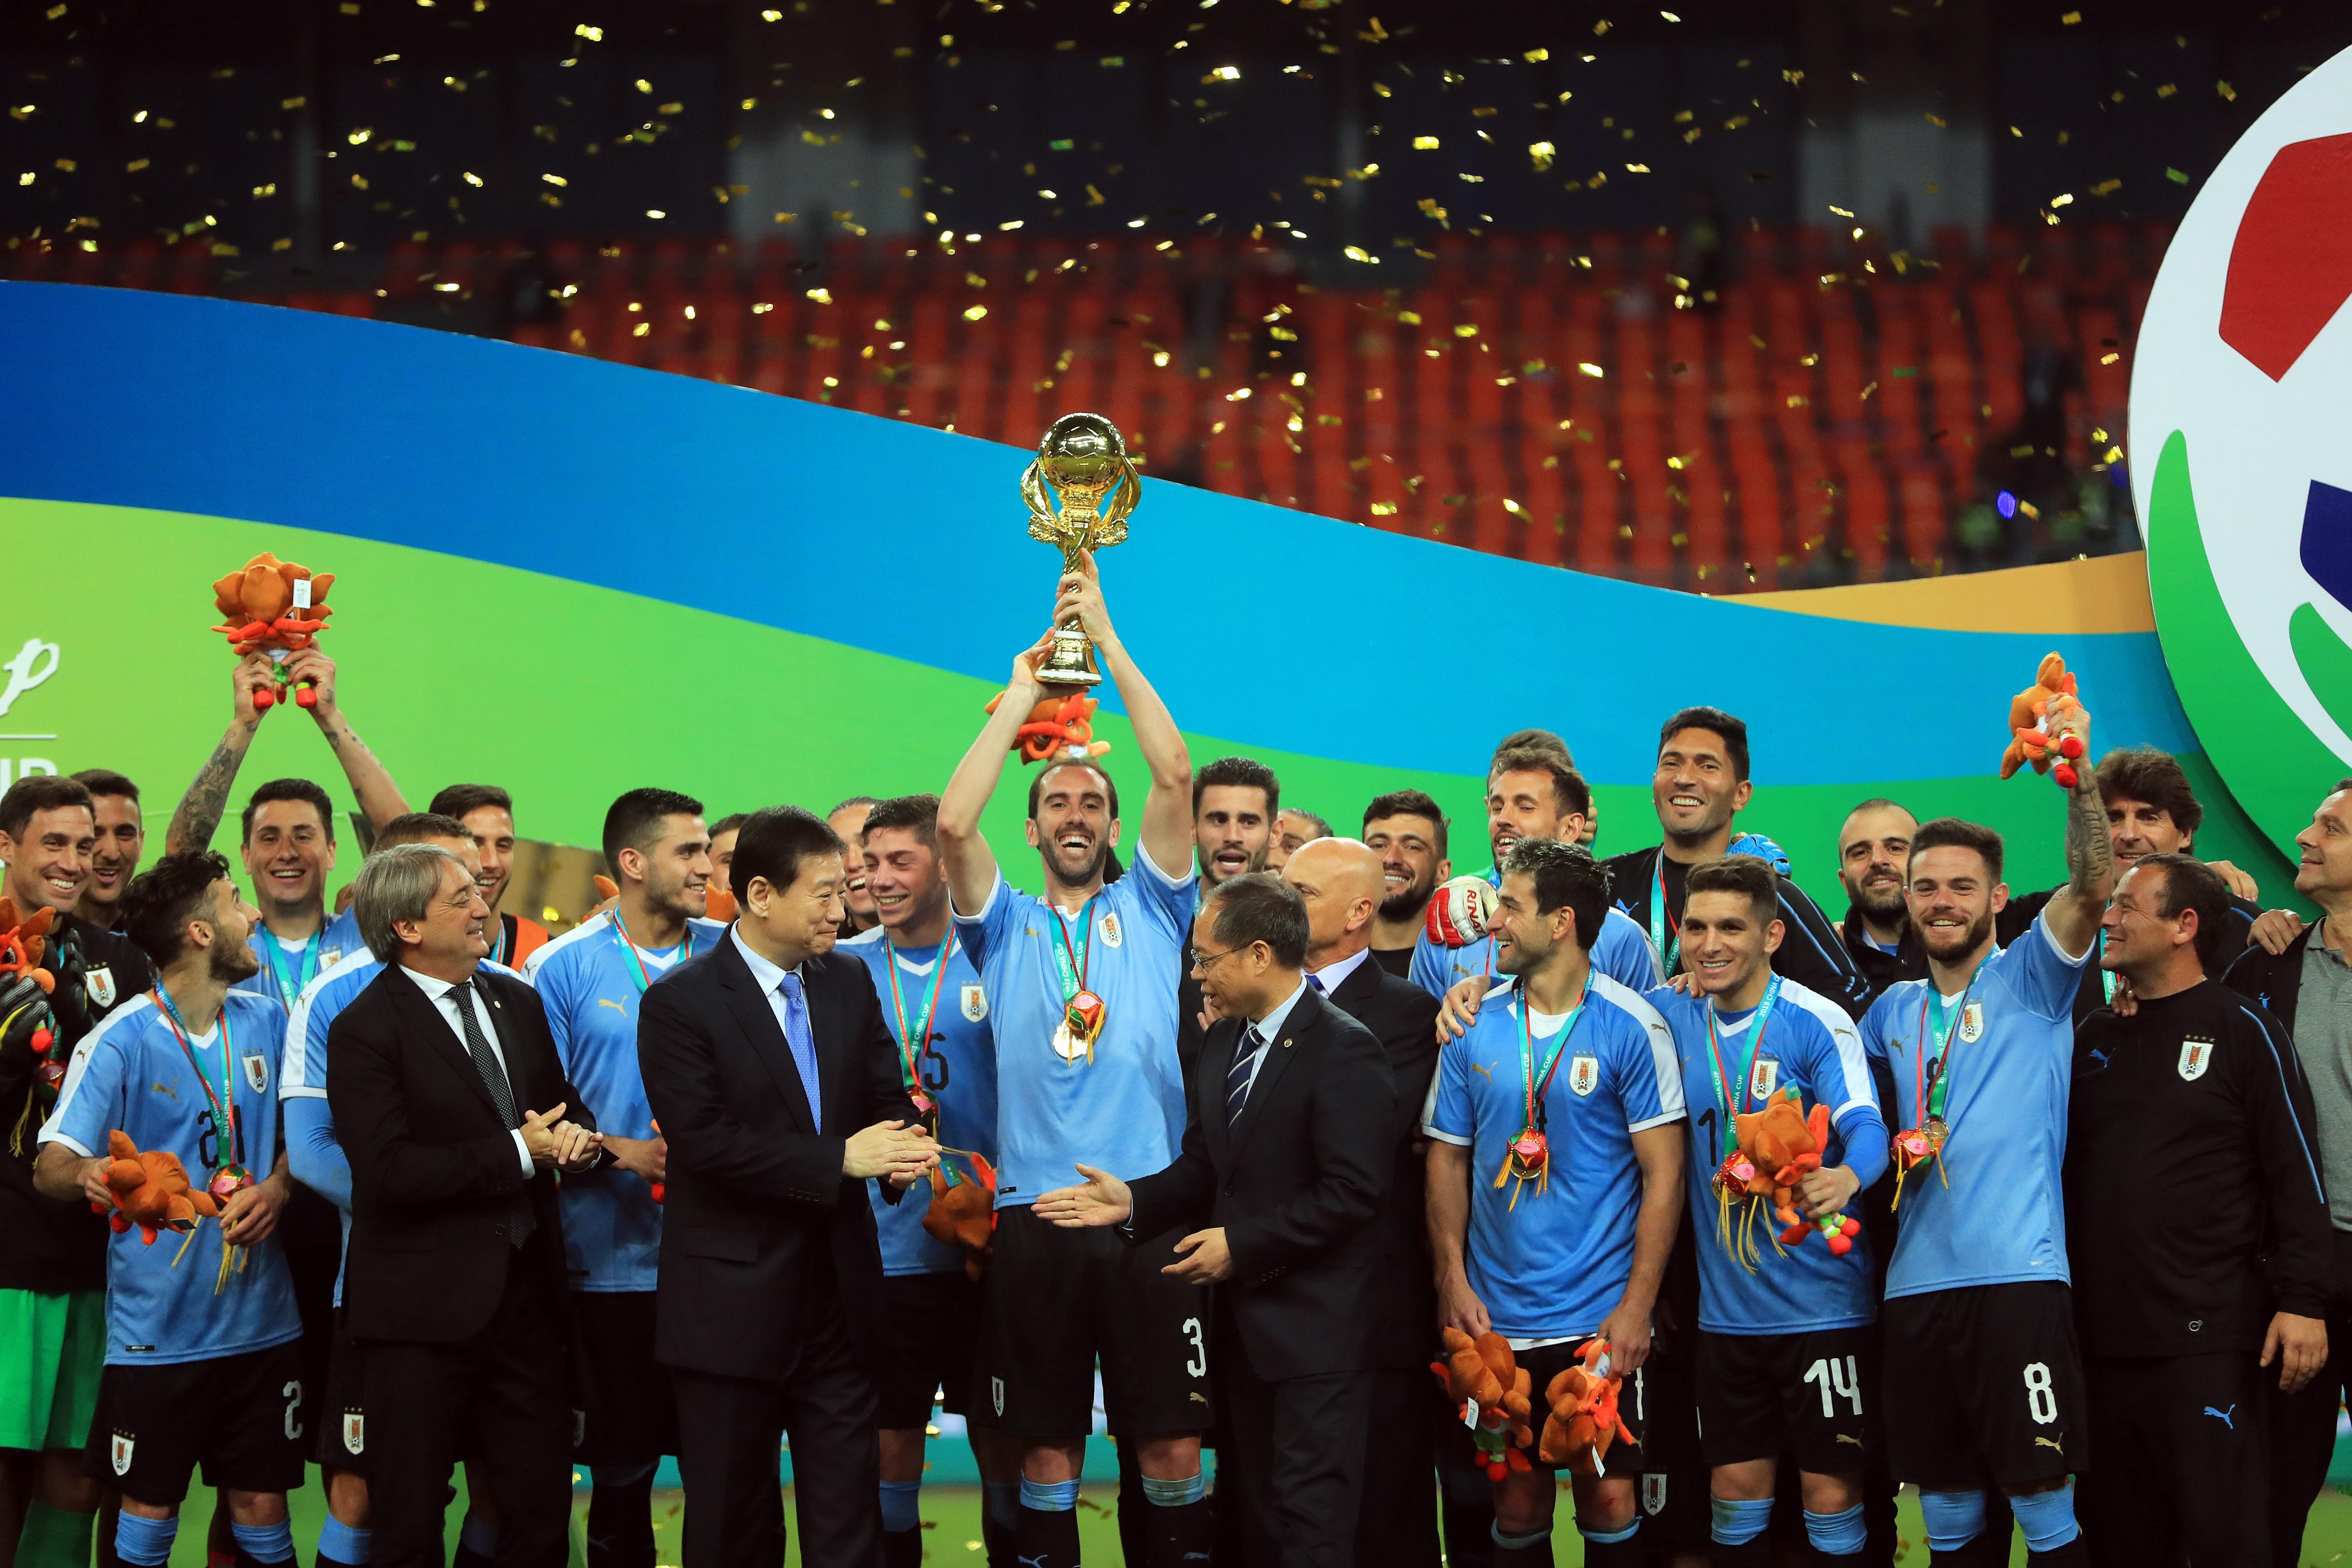 El defensa y capitán de la selección uruguaya, Diego Godín, levanta el trofeo tras la final de la China Cup. (Foto Prensa Libre: EFE)